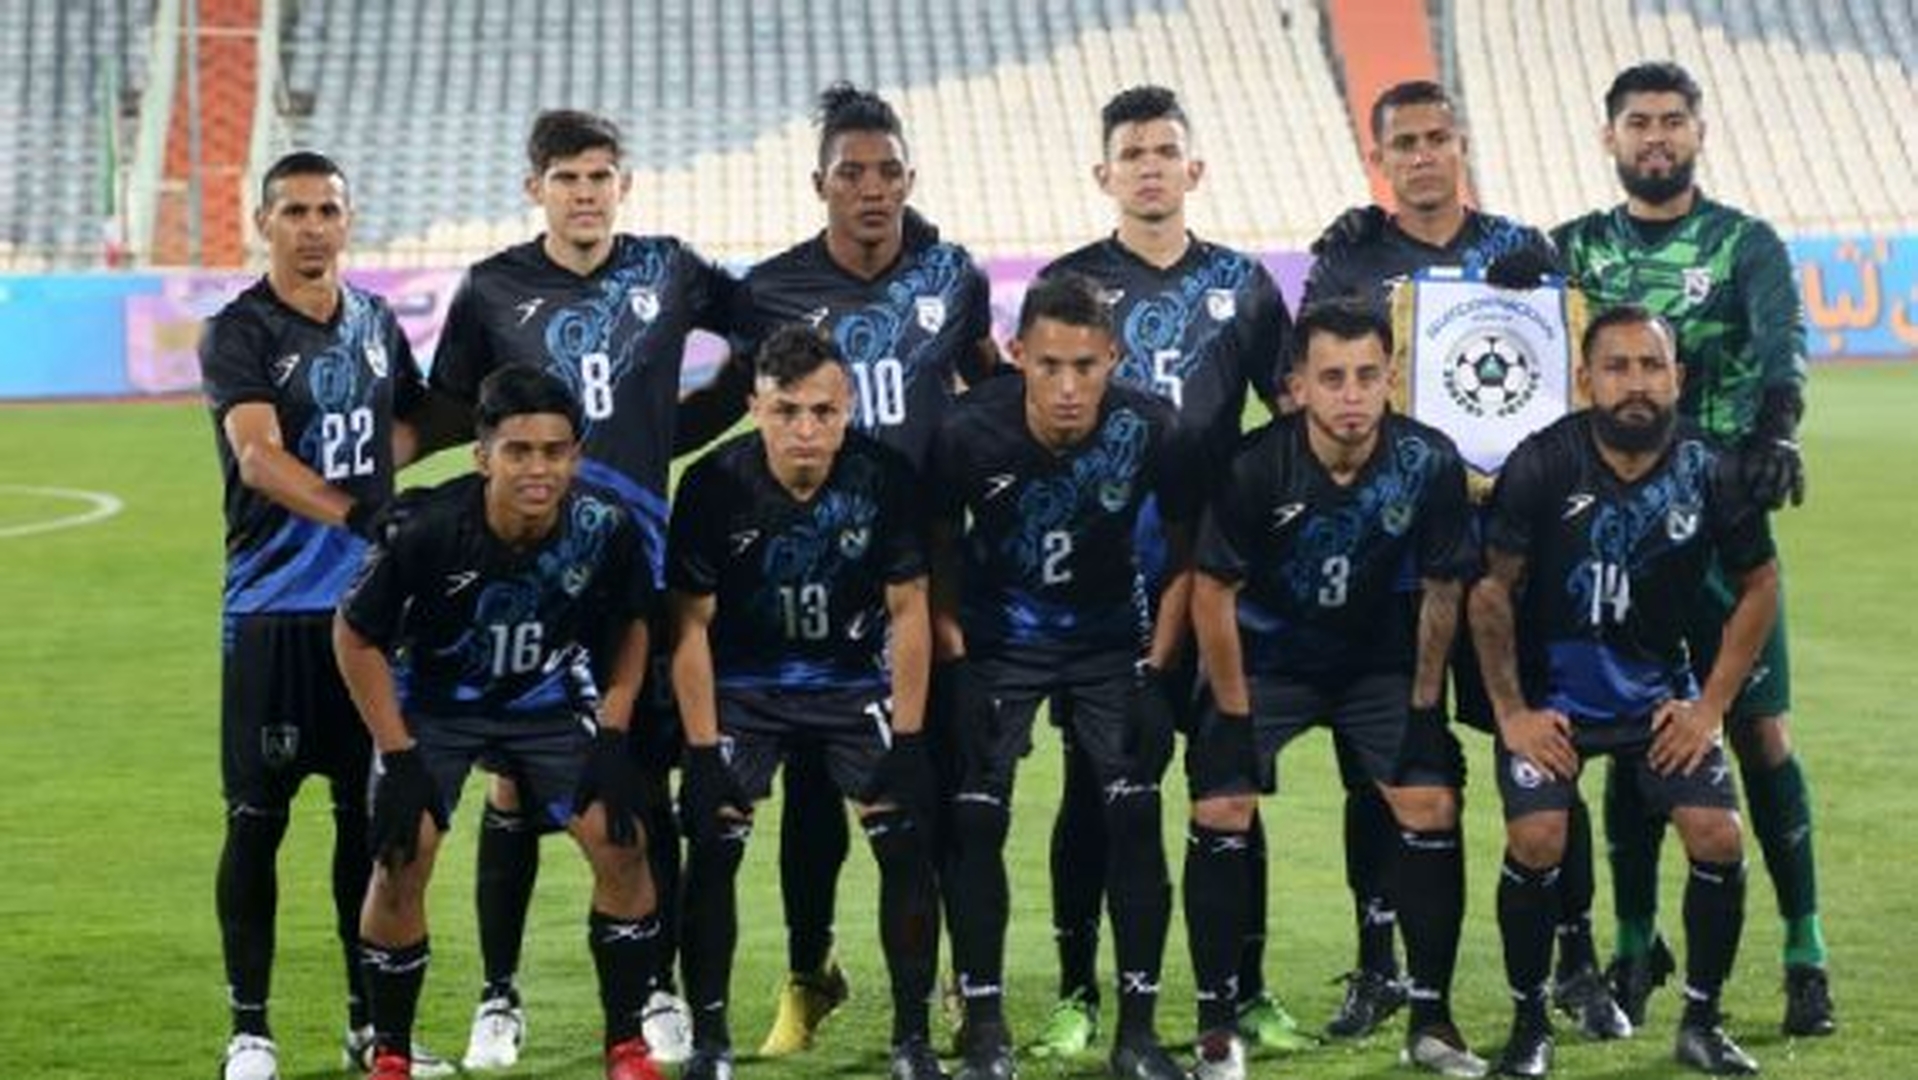 Alineación de la selección nacional de fútbol de Nicaragua al clasificar a la Copa Oro por cuarta ocasión.